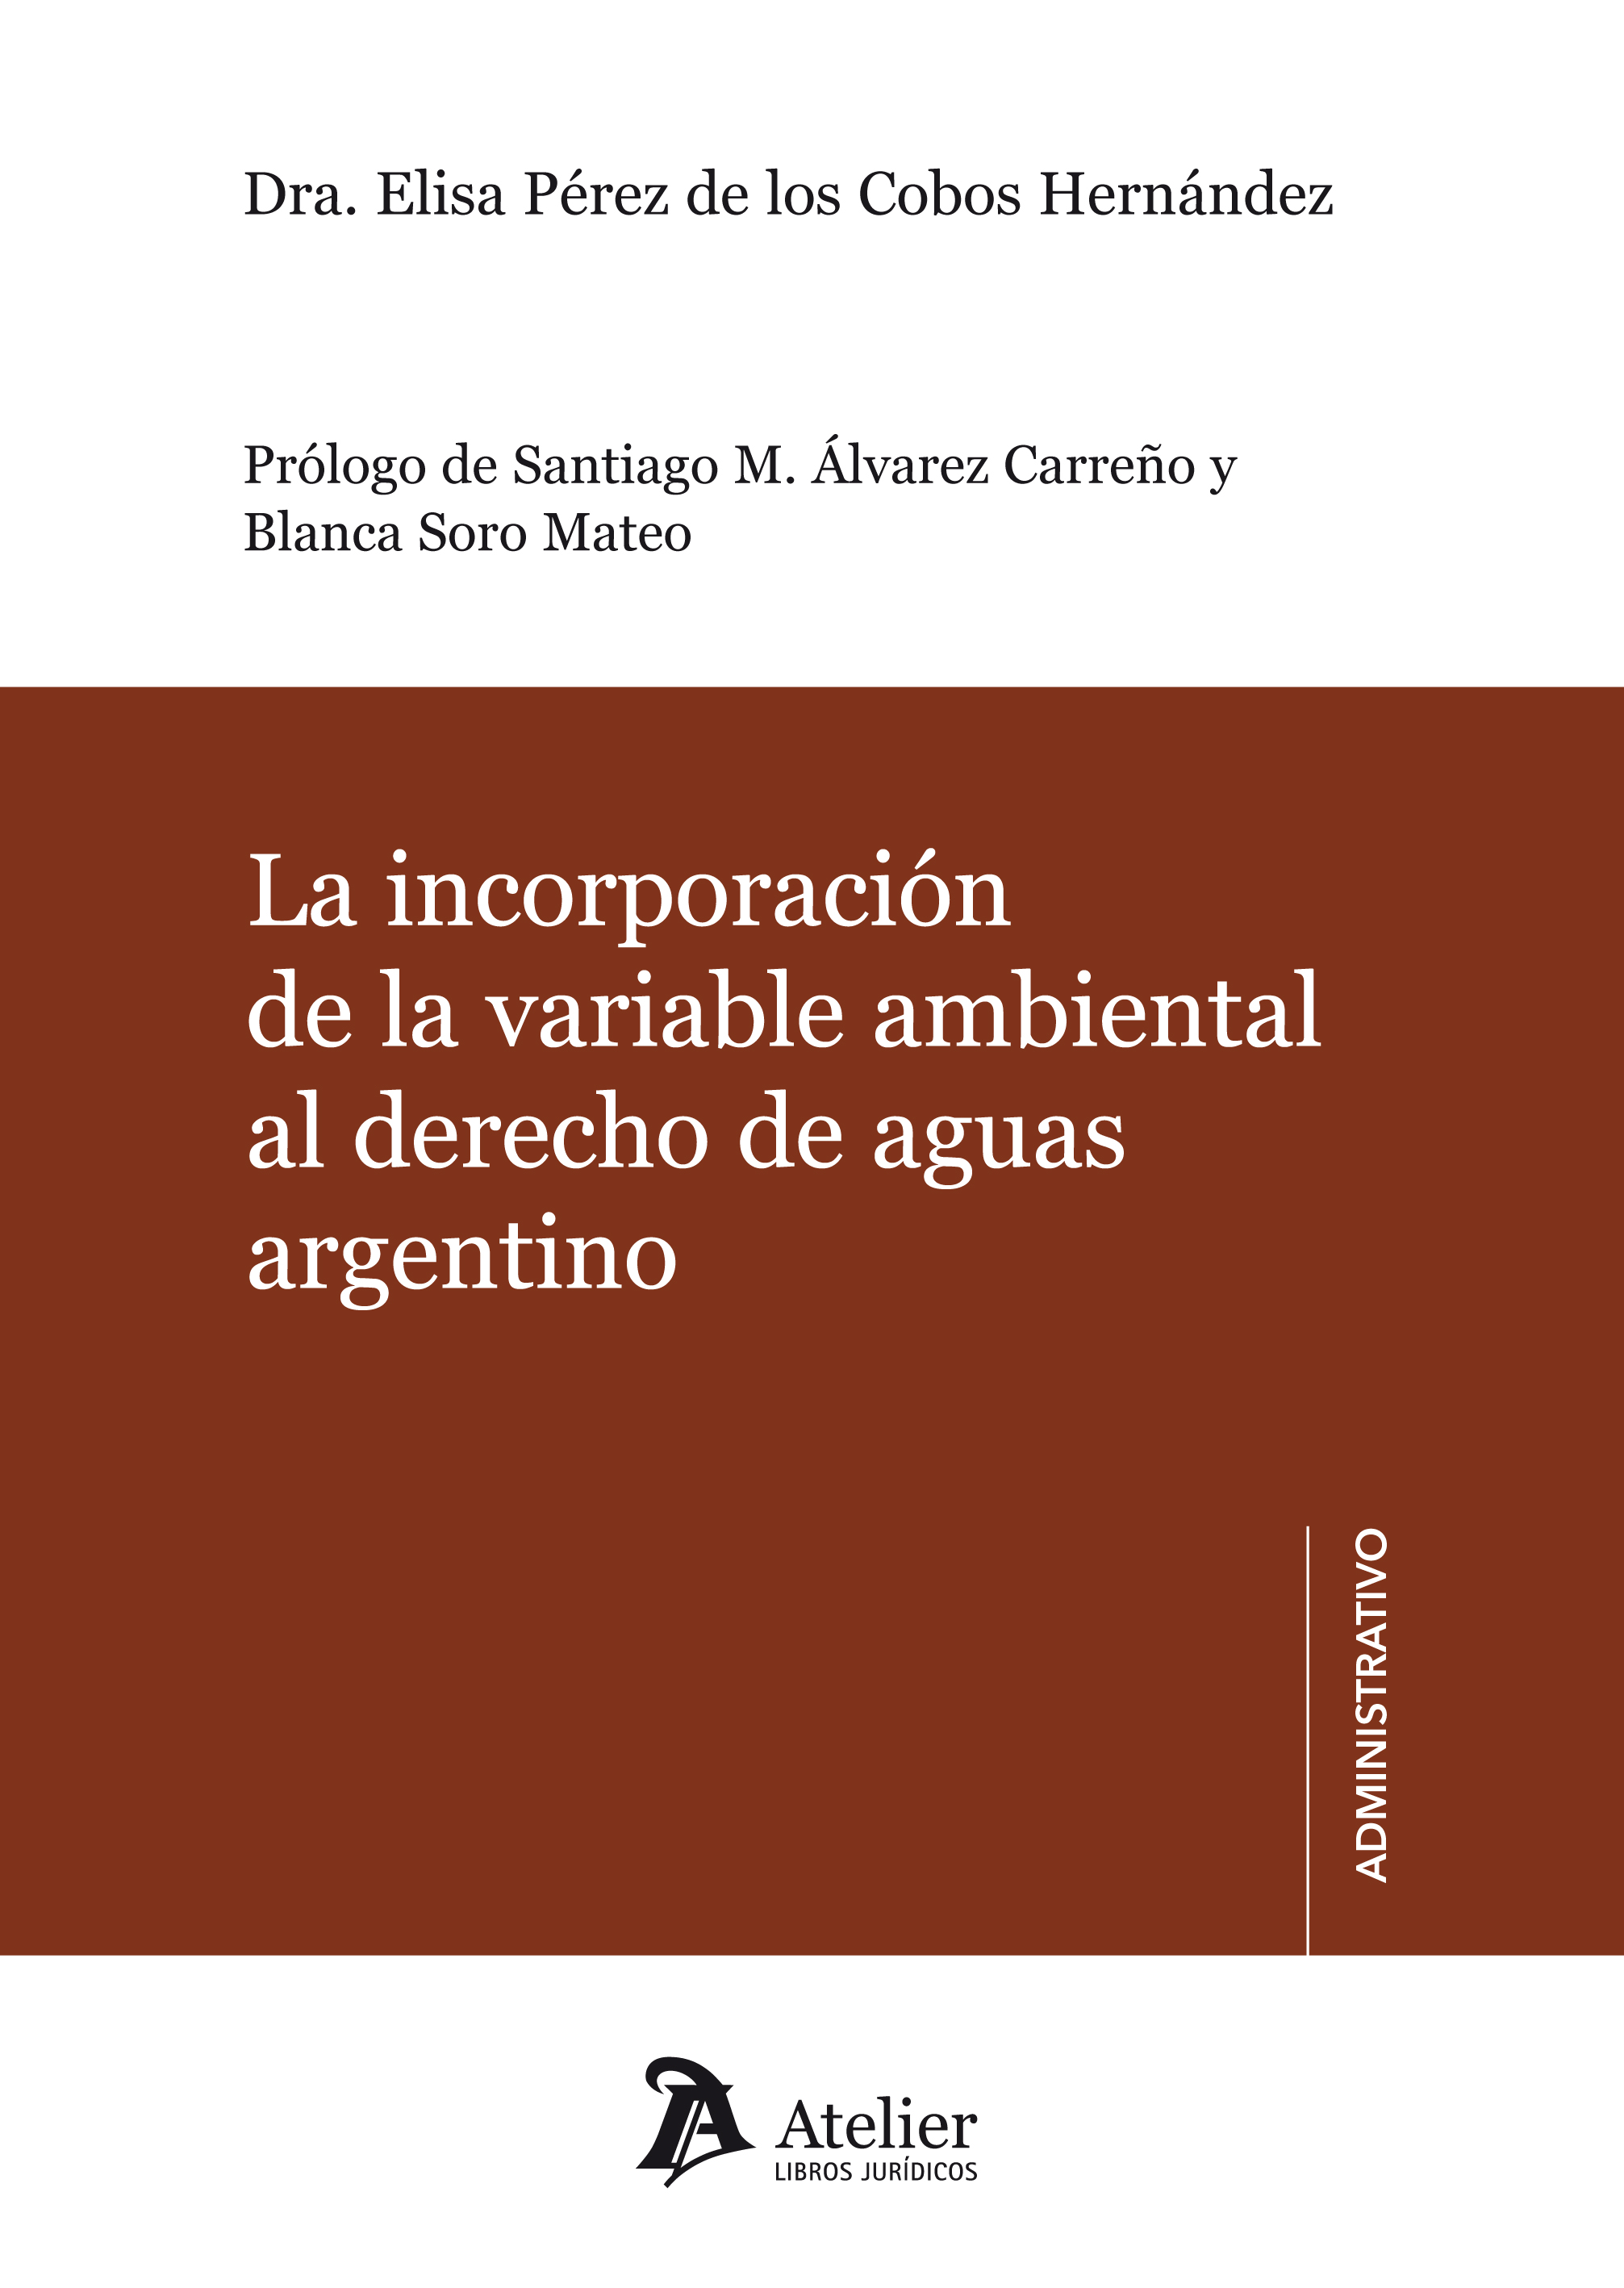 Imagen de portada del libro La incorporación de la variable ambiental al derecho de aguas argentino